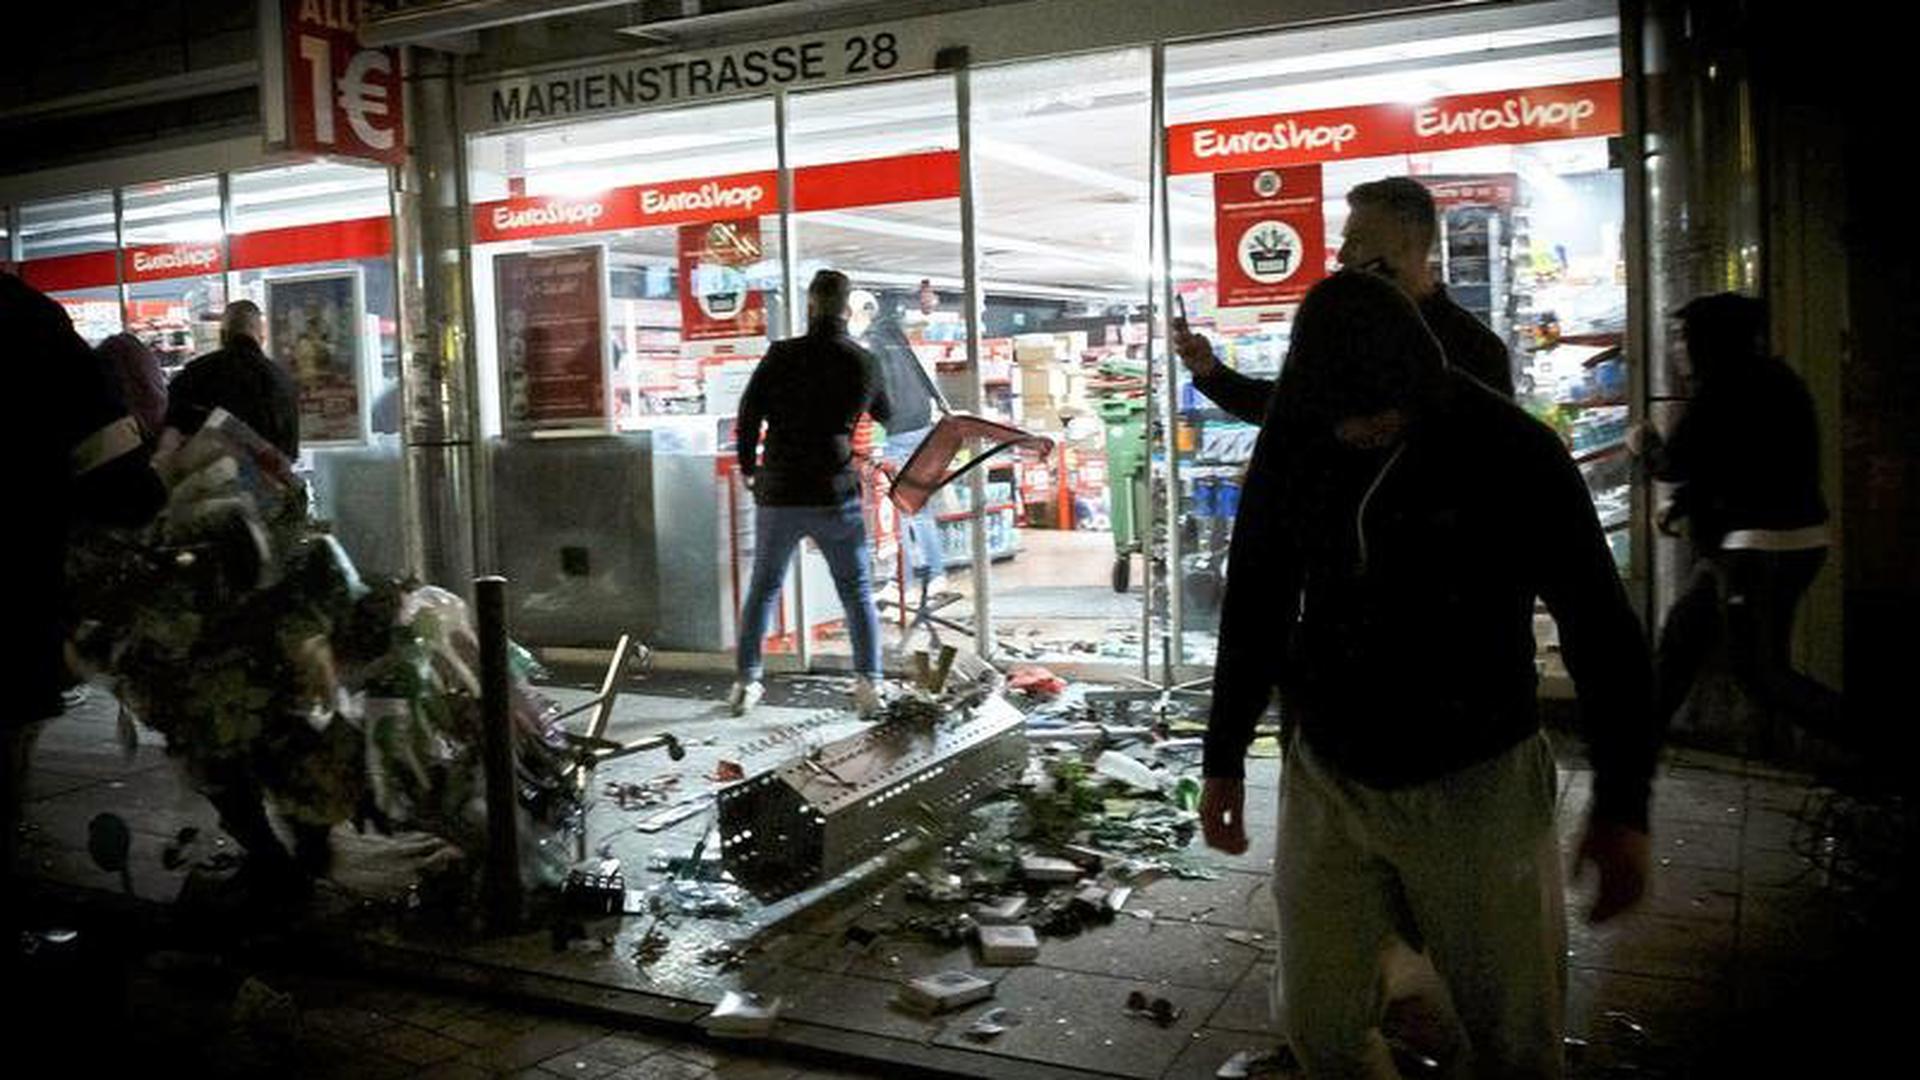 Zerstörungswut: Bei Auseinandersetzungen mit der Polizei haben Dutzende gewalttätige Kleingruppen die Stuttgarter Innenstadt verwüstet und mehrere Beamte verletzt. Die ersten Anklagen sind nun erhoben, bald starten die Prozesse. 